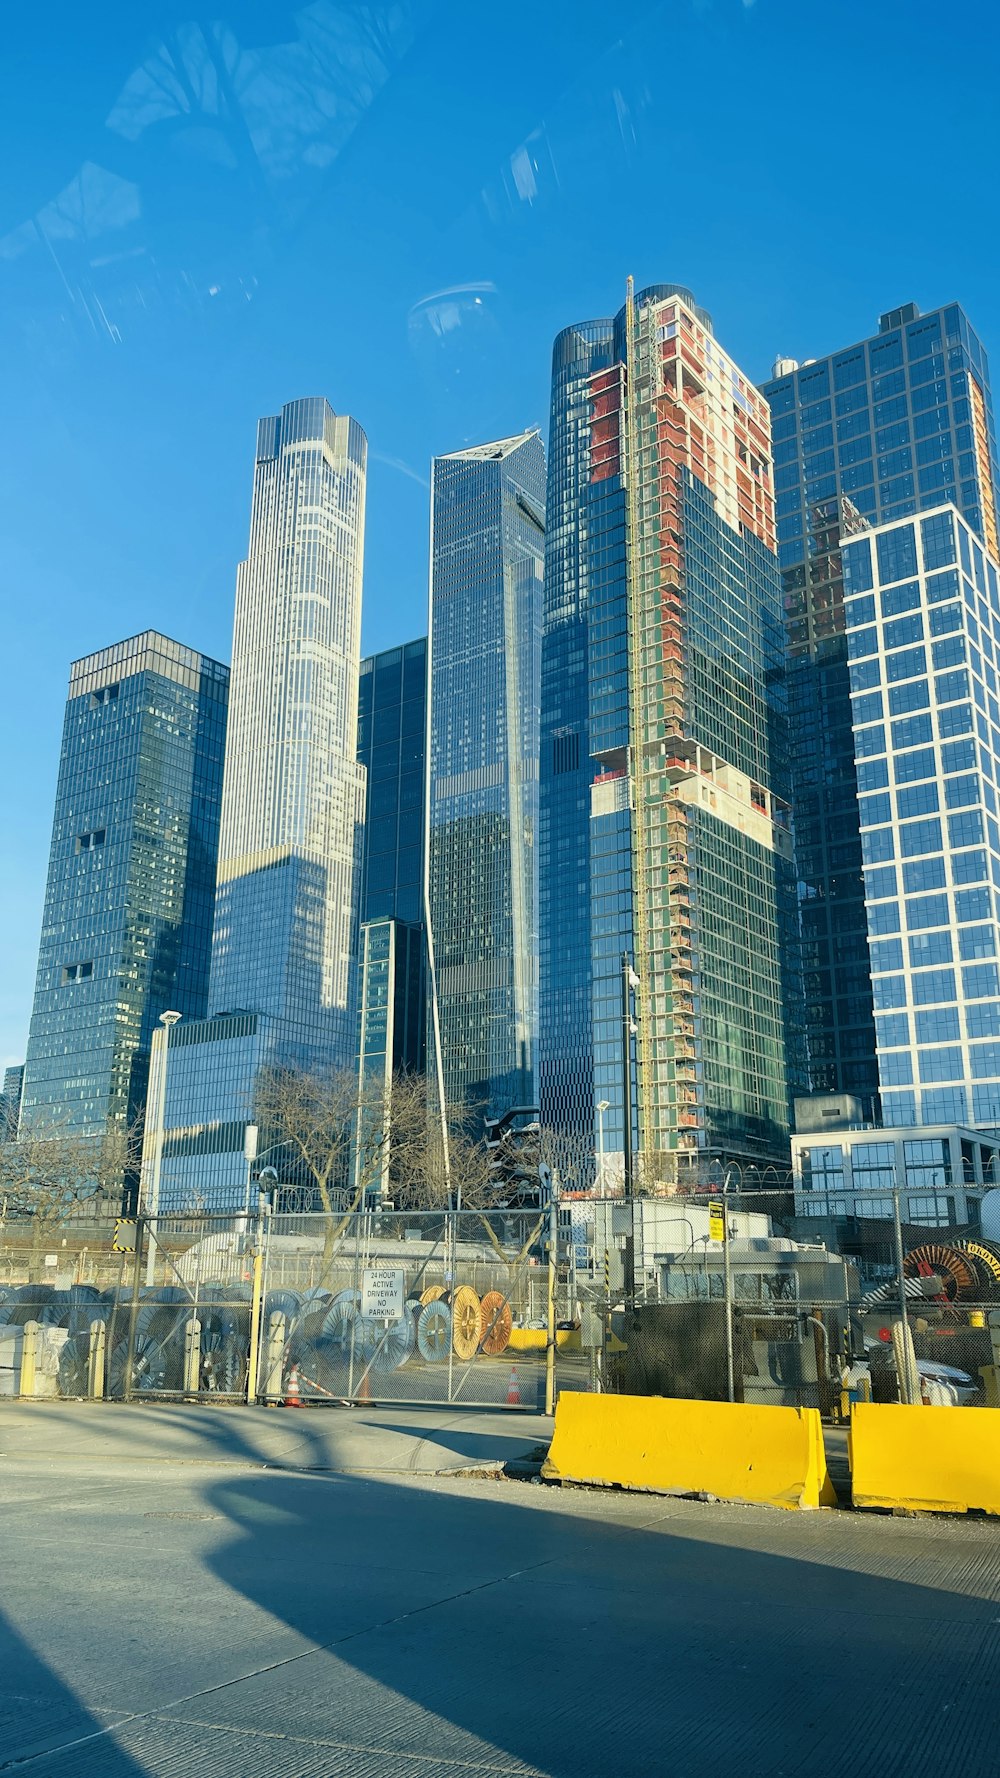 Una vista de algunos edificios muy altos de la ciudad